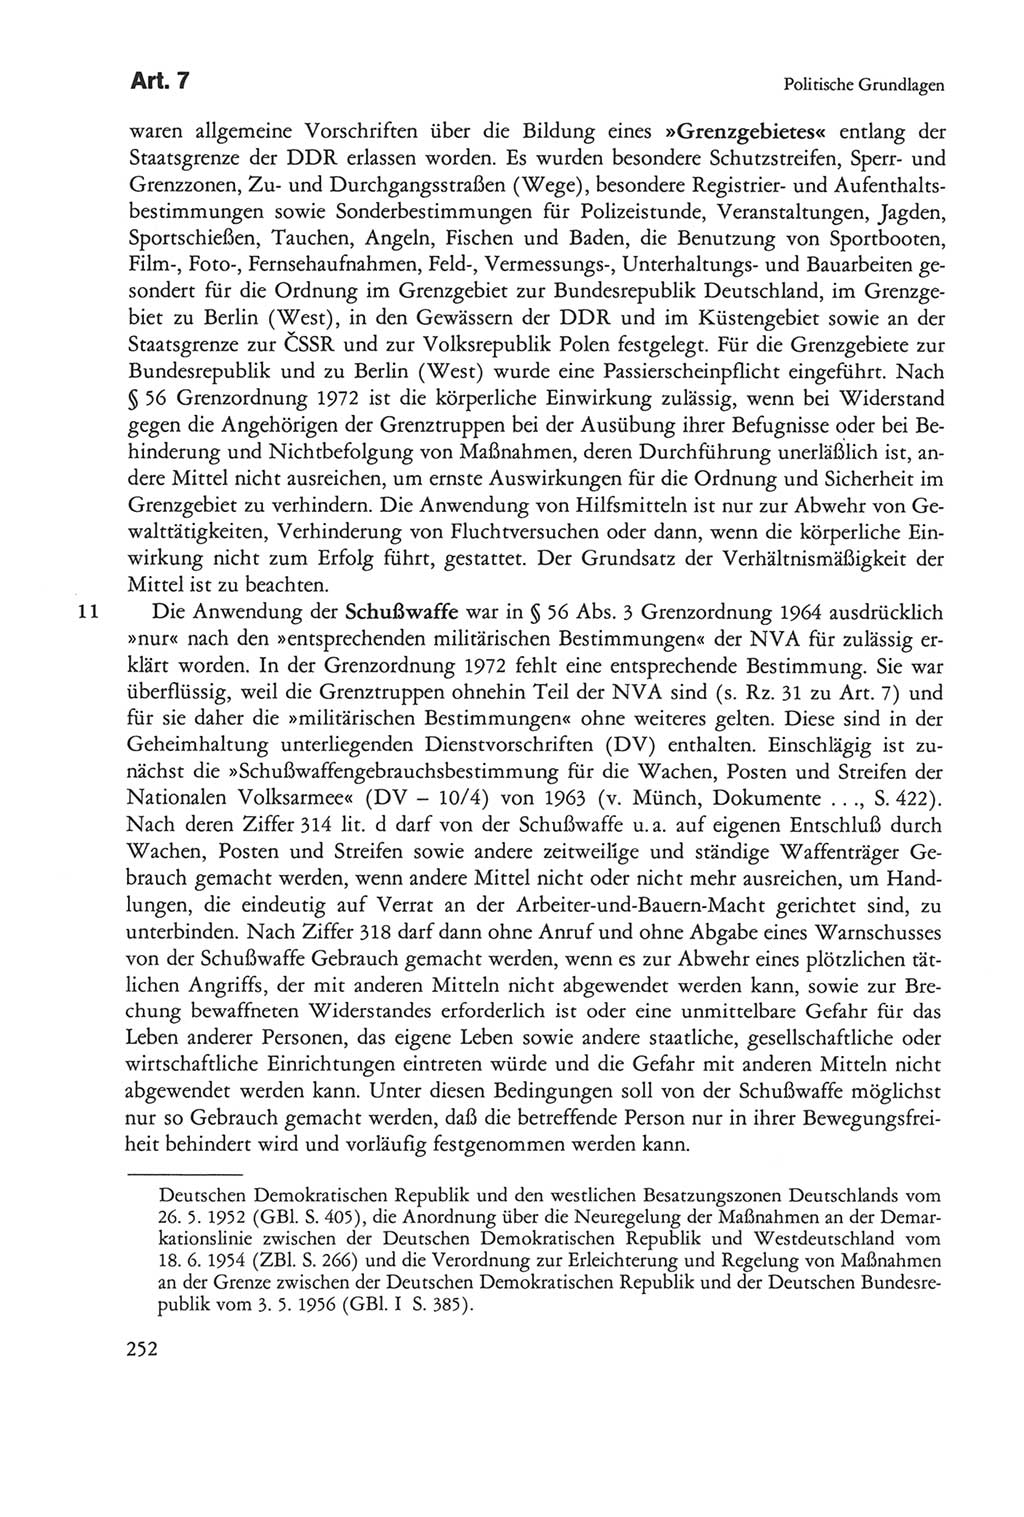 Die sozialistische Verfassung der Deutschen Demokratischen Republik (DDR), Kommentar mit einem Nachtrag 1997, Seite 252 (Soz. Verf. DDR Komm. Nachtr. 1997, S. 252)